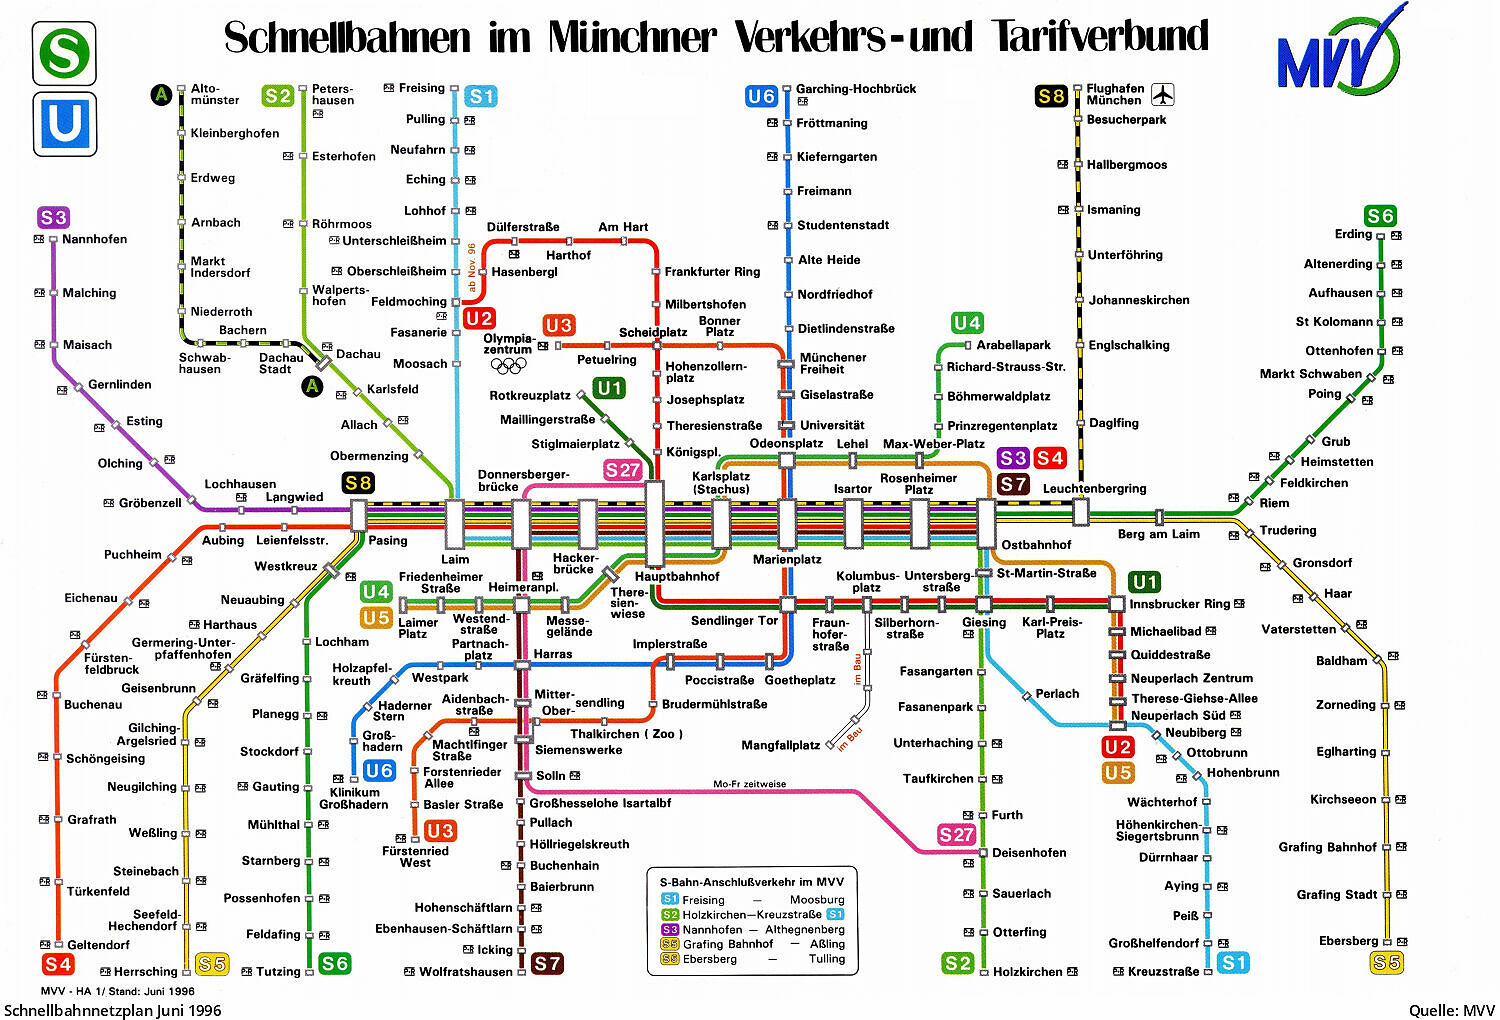 U-Bahn München - Schnellbahnnetz von 1972 bis heute